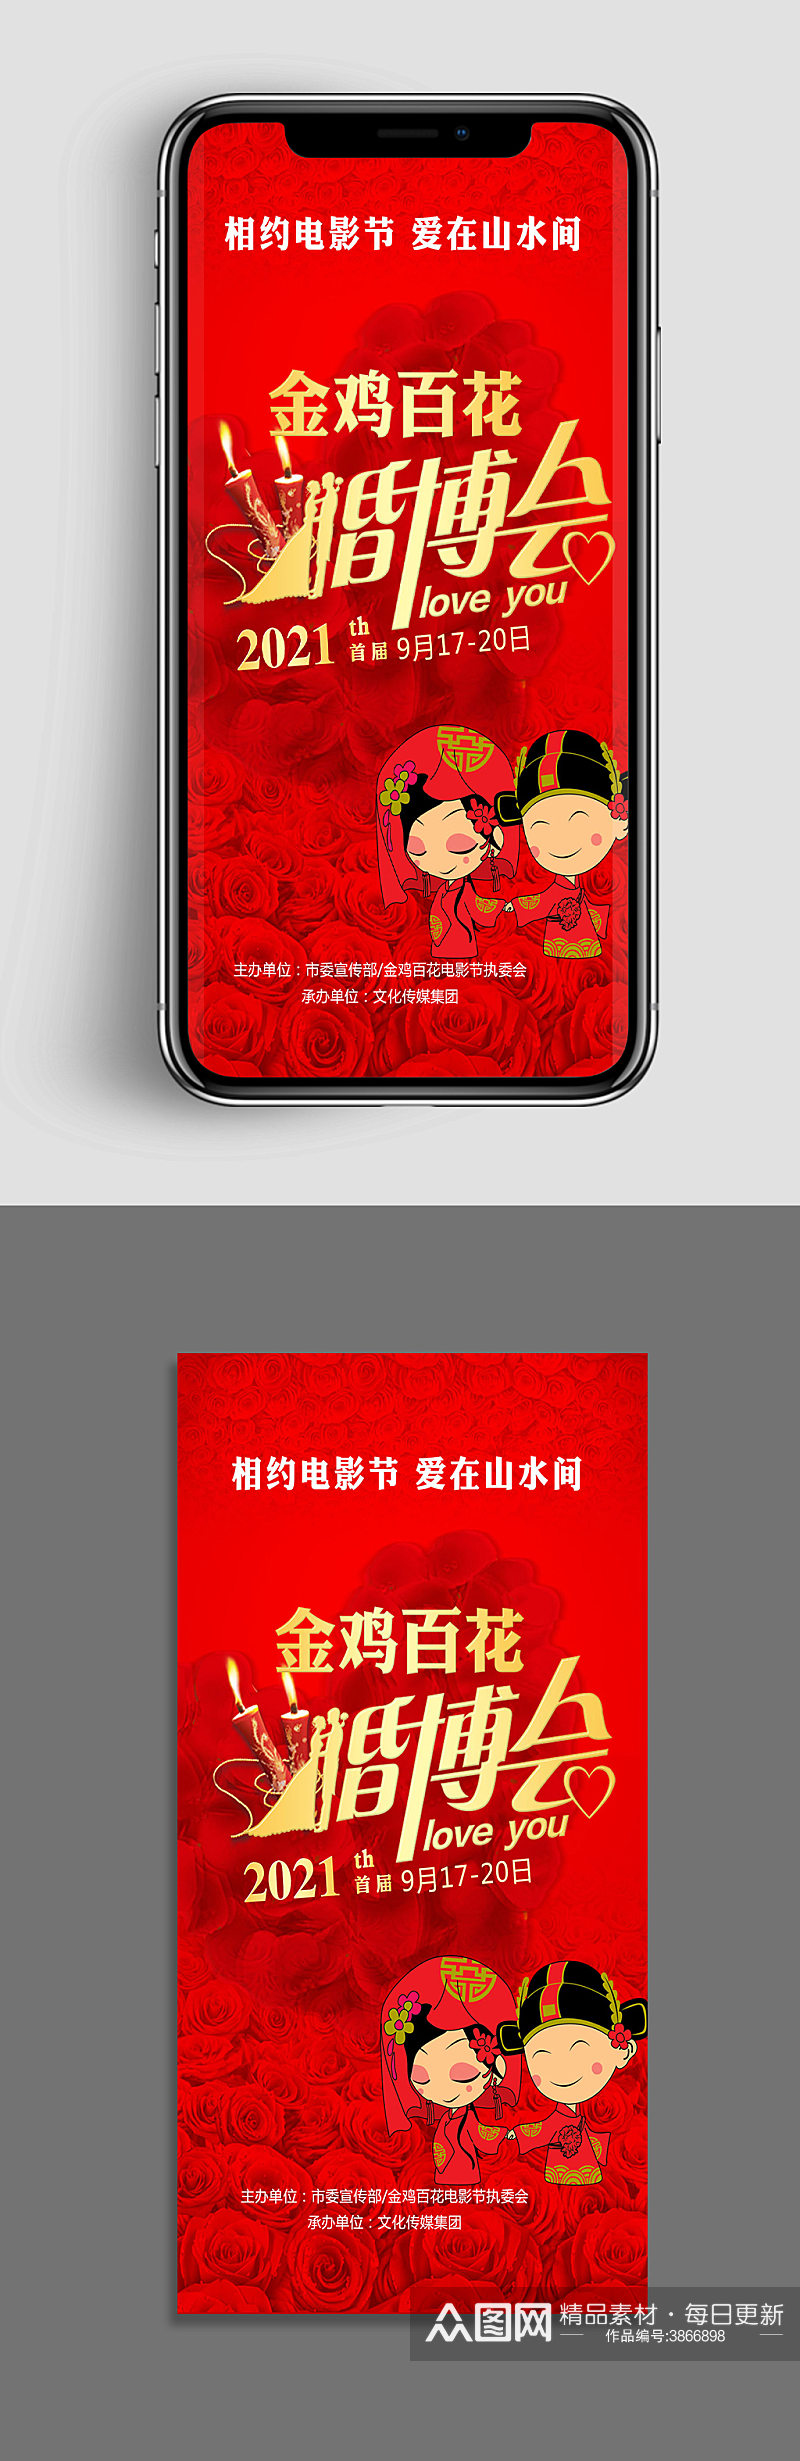 金鸡百花电影节婚博会创意手机app海报素材